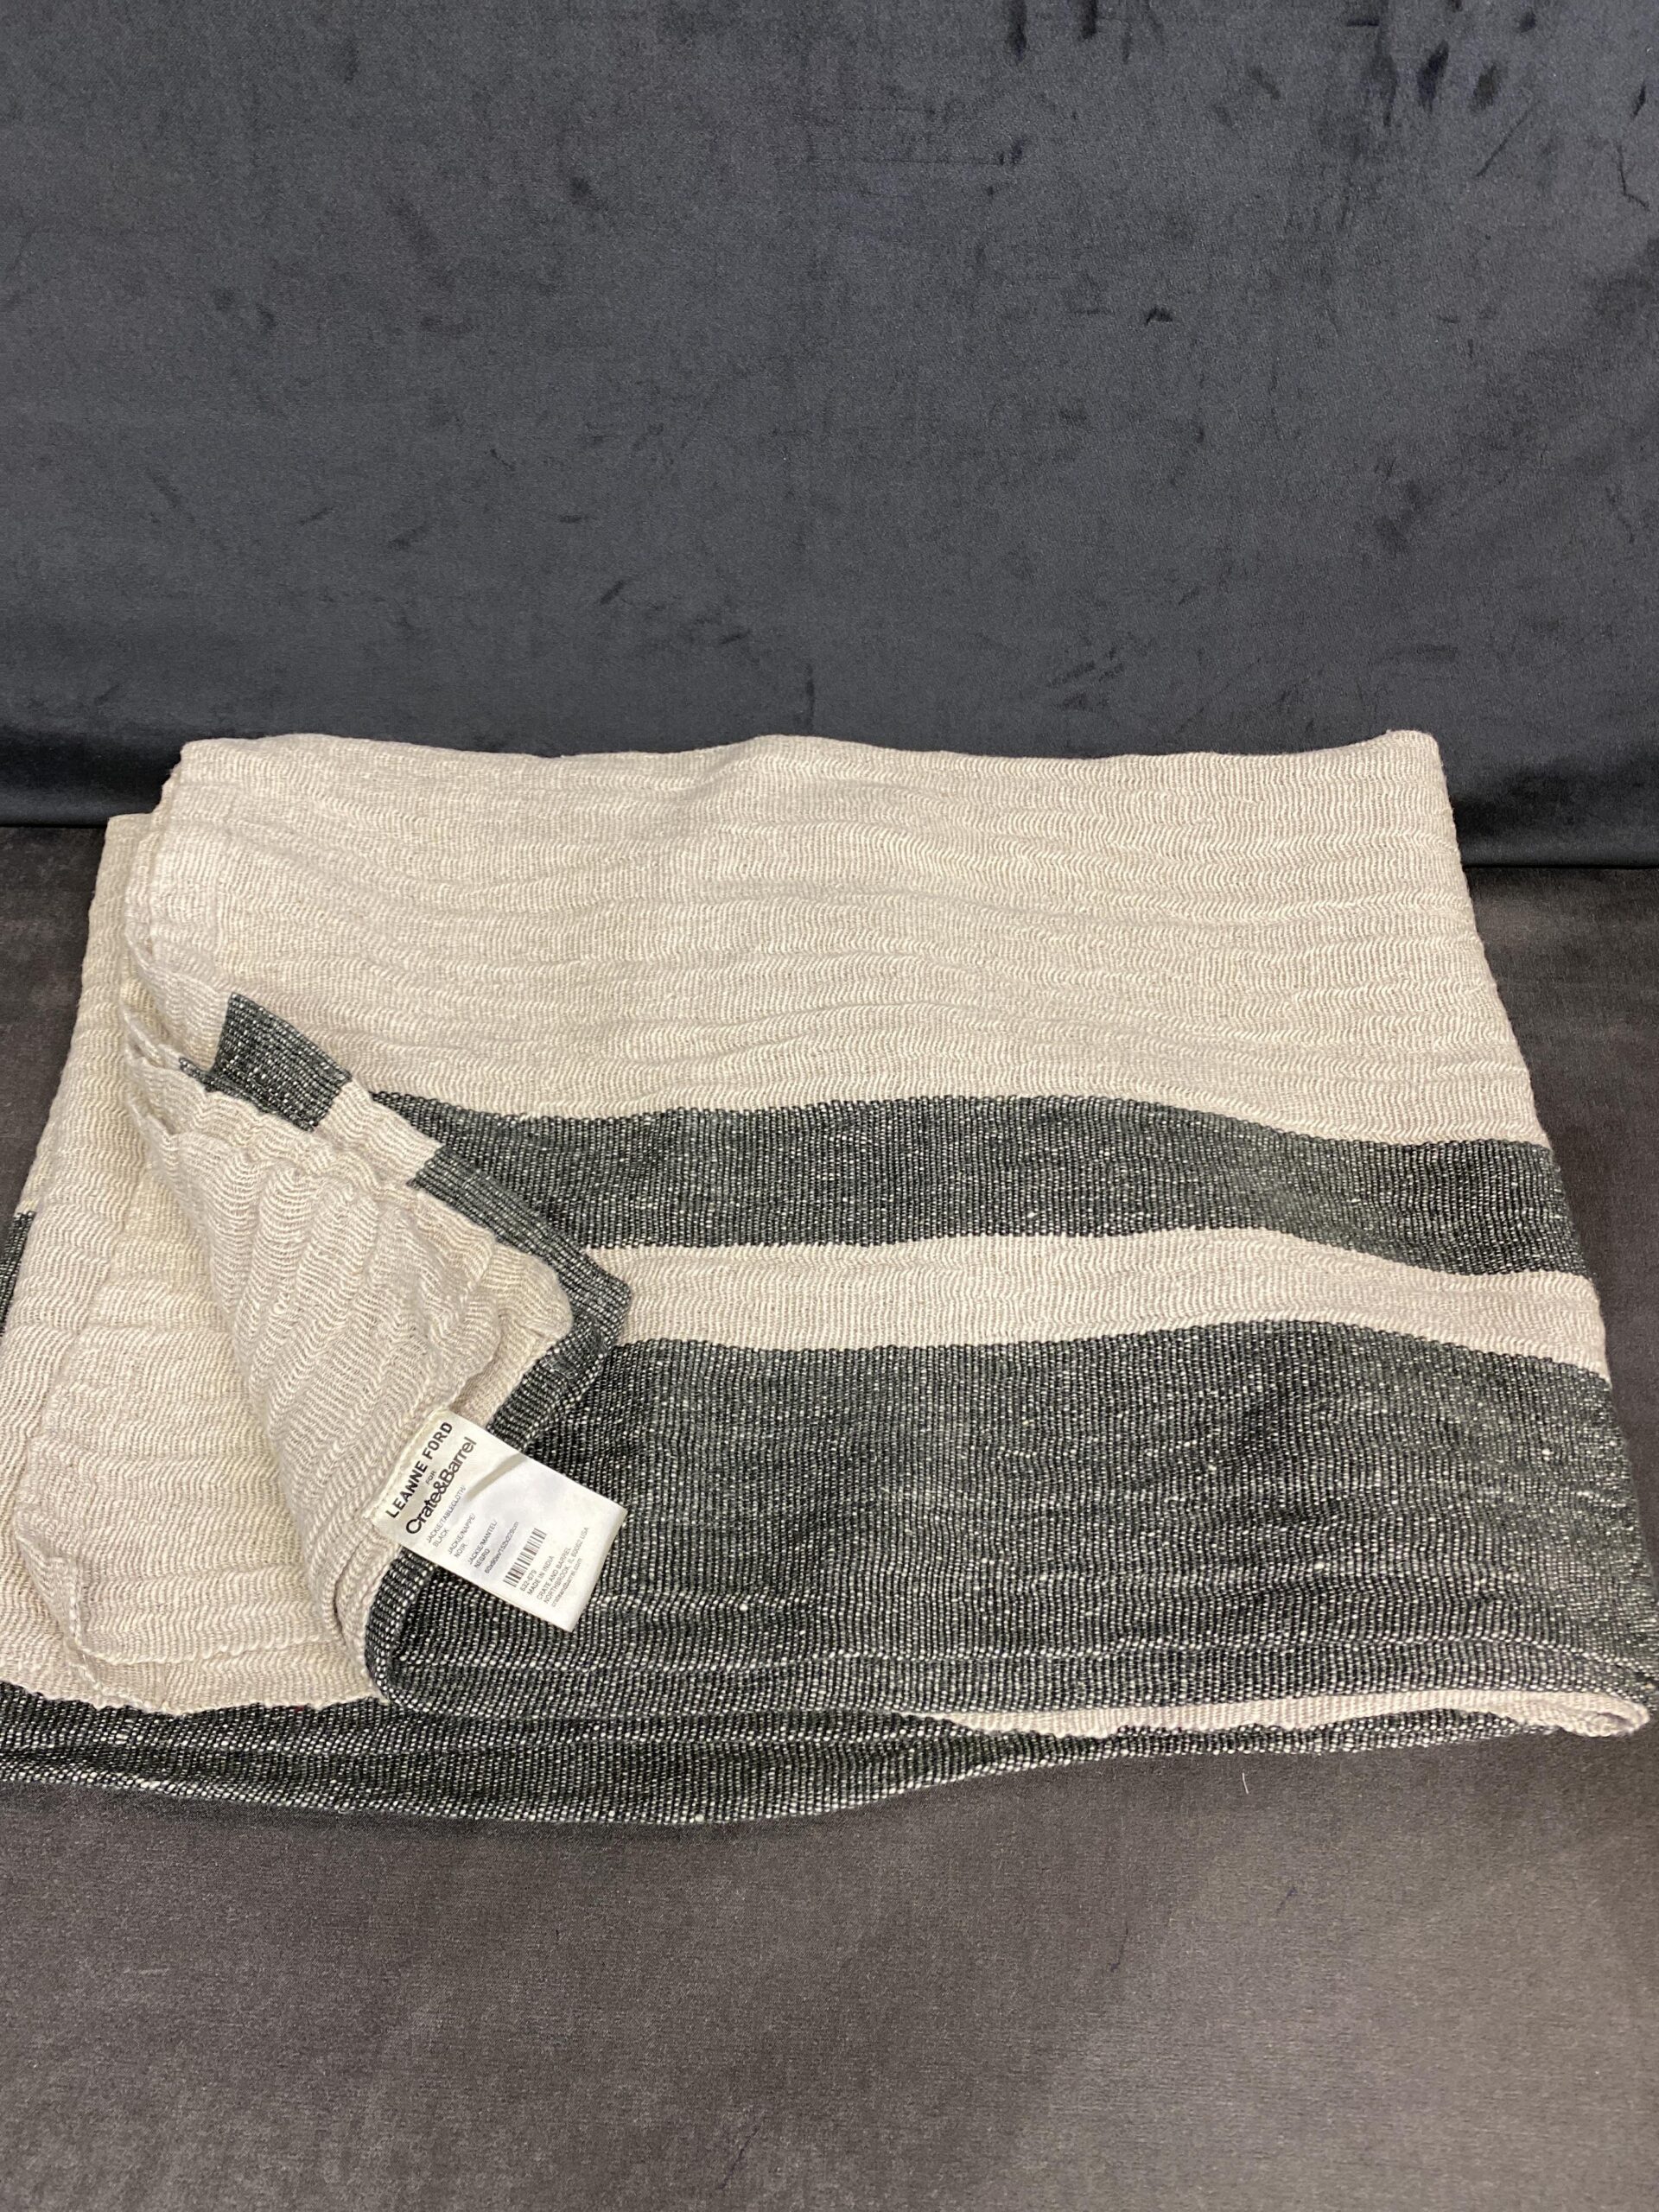 Crate & Barrel Tablecloth – Linen/Cotton